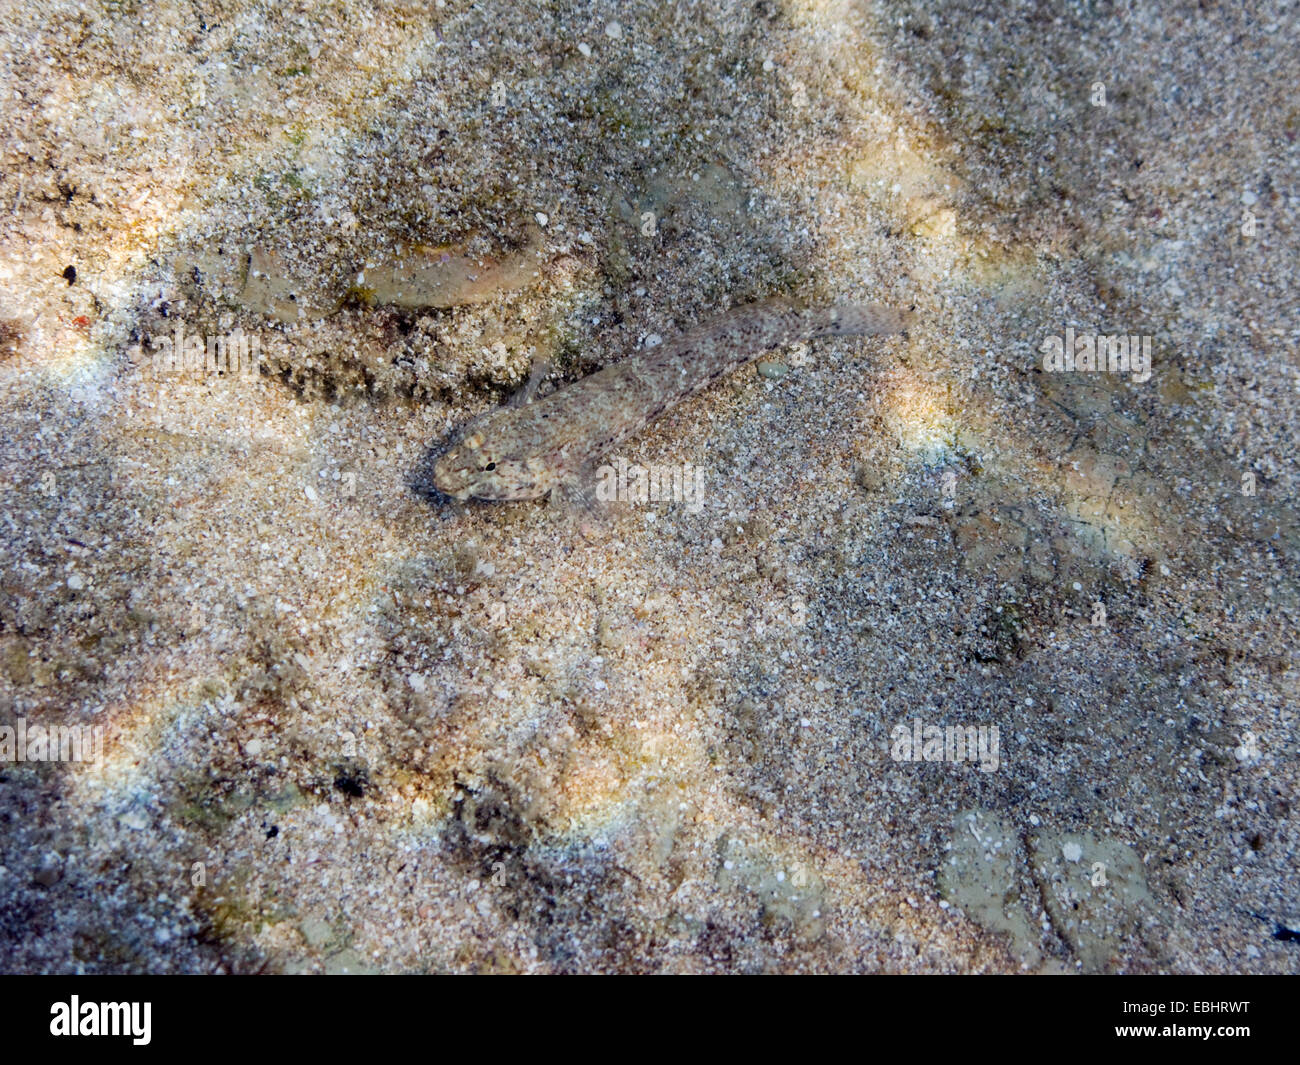 Ein kleiner Fisch, wie Sand getarnt, auf dem Boden des Mittelmeeres, am Fig Tree Bay, Zypern. Stockfoto